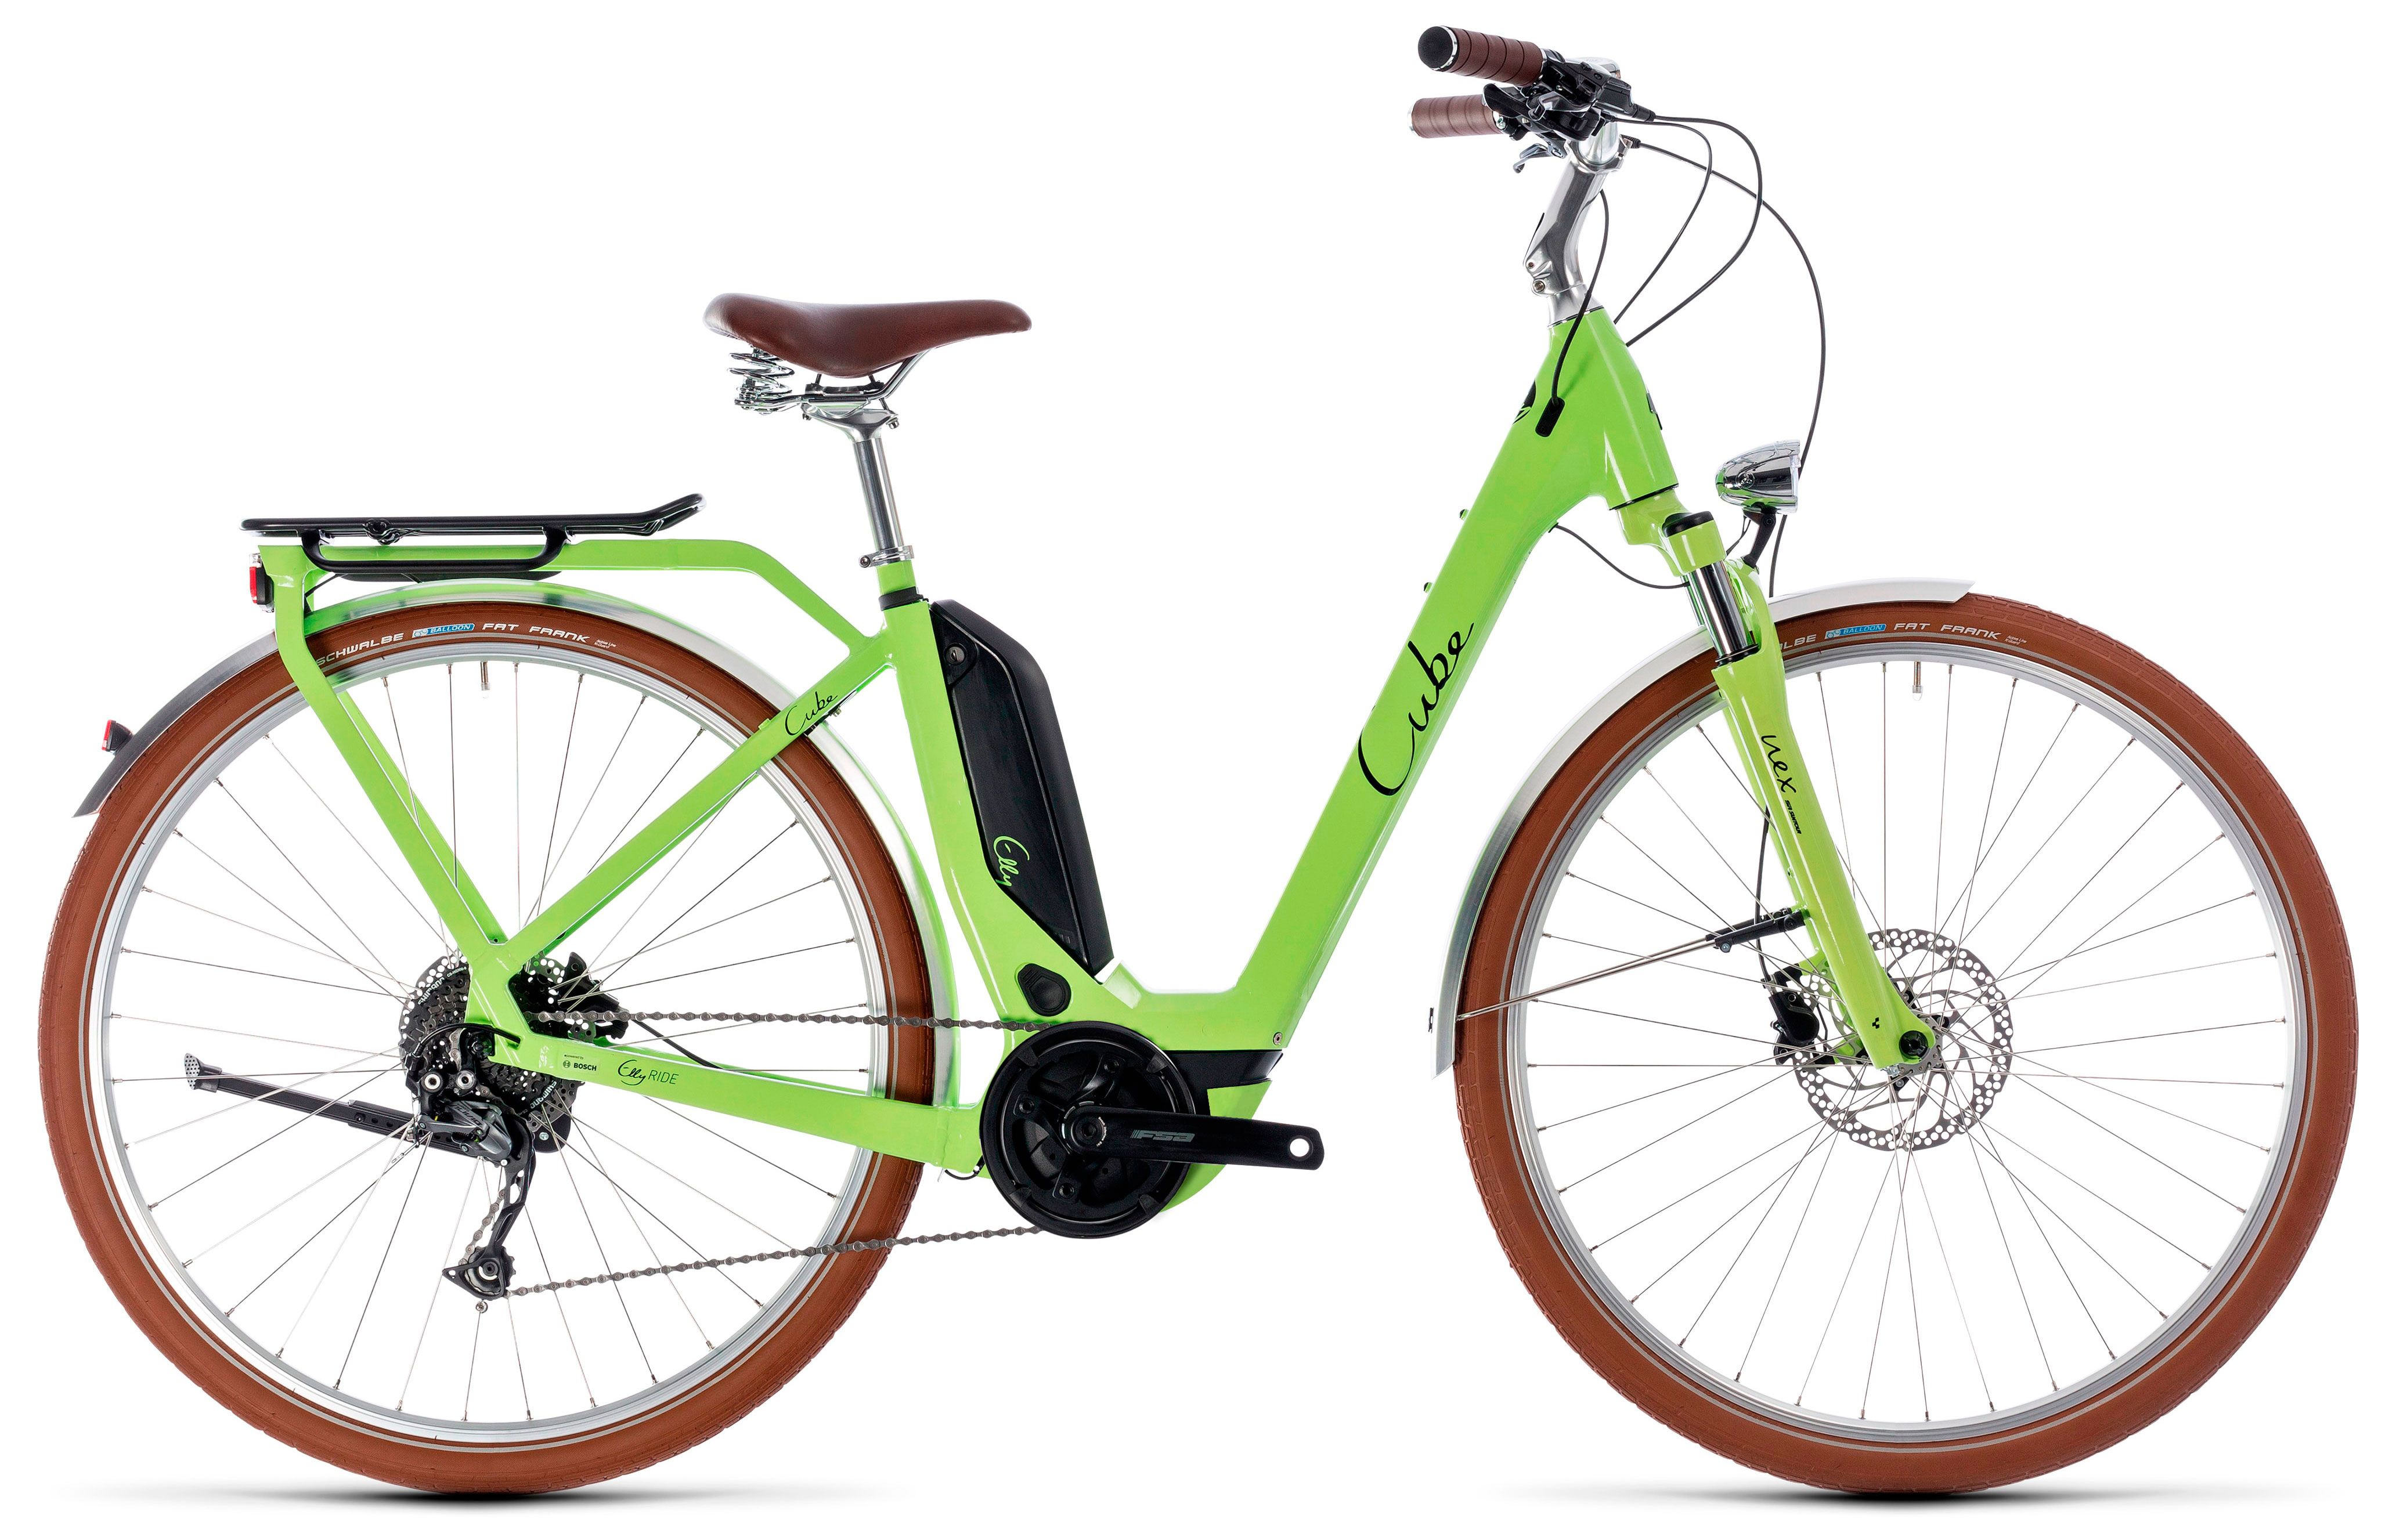  Отзывы о Трехколесный детский велосипед Cube Elly Ride Hybrid 400 2018